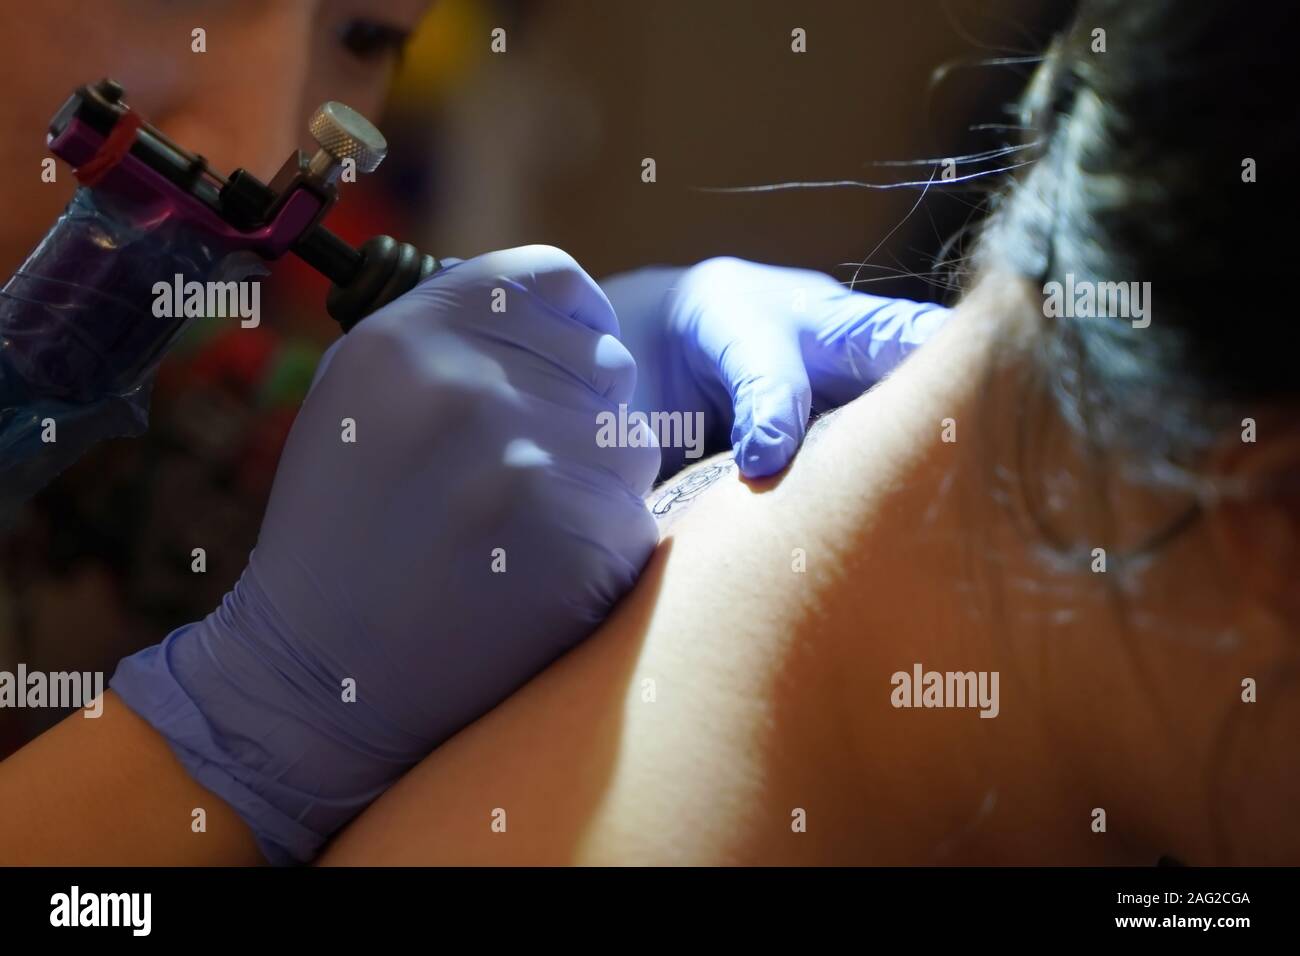 Middletown, CT / USA - 7 décembre 2019 : artiste de tatouage se concentre en traçant un dessin de tatouage floral sur l'arrière du cou du client Banque D'Images